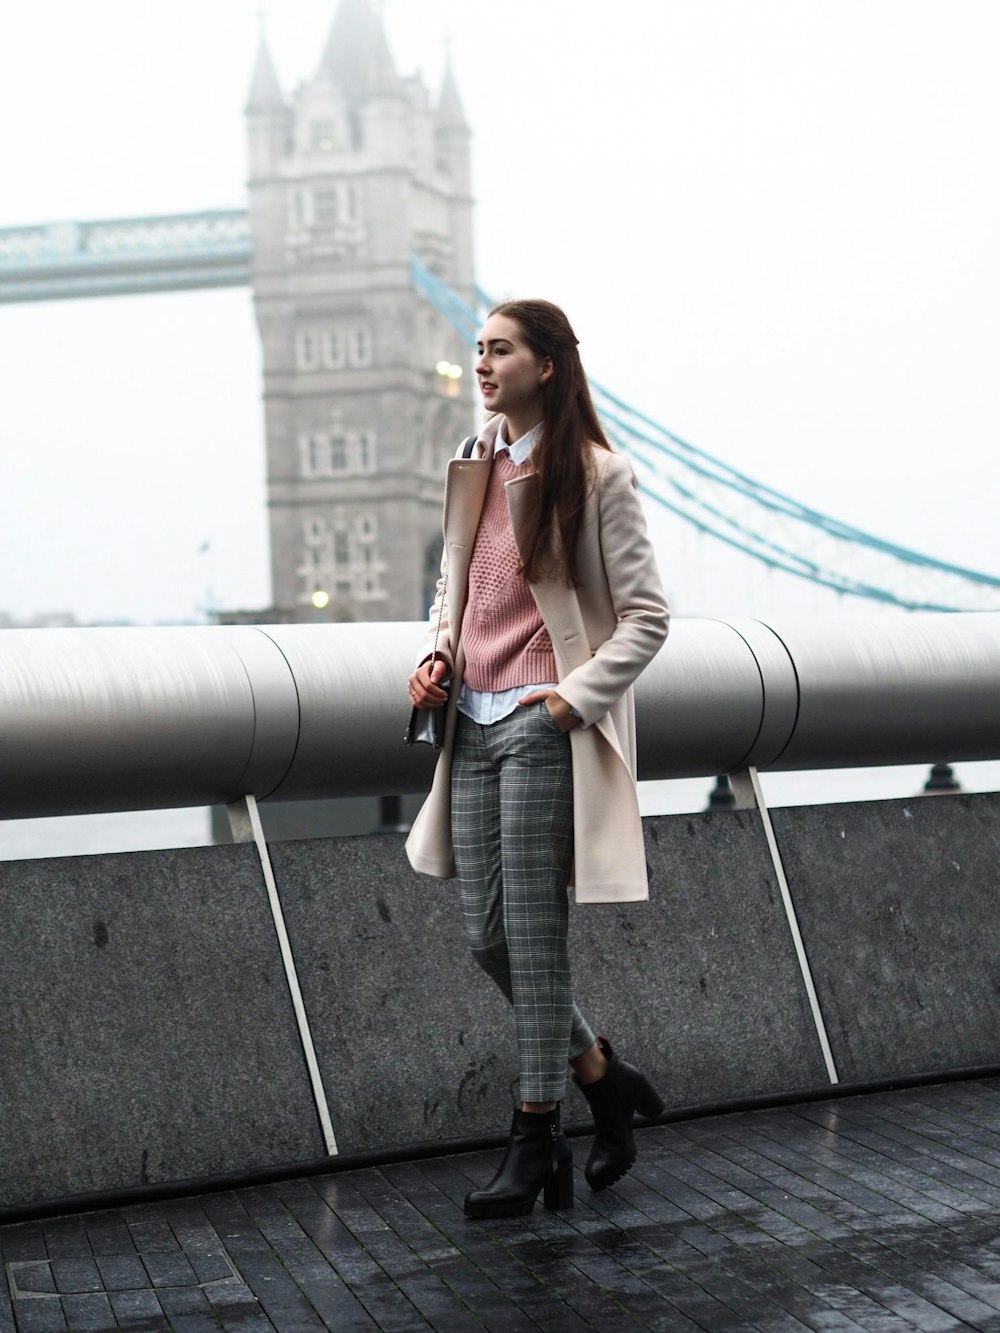 Frau im braunen Mantel in der Nähe der Tower Bridge